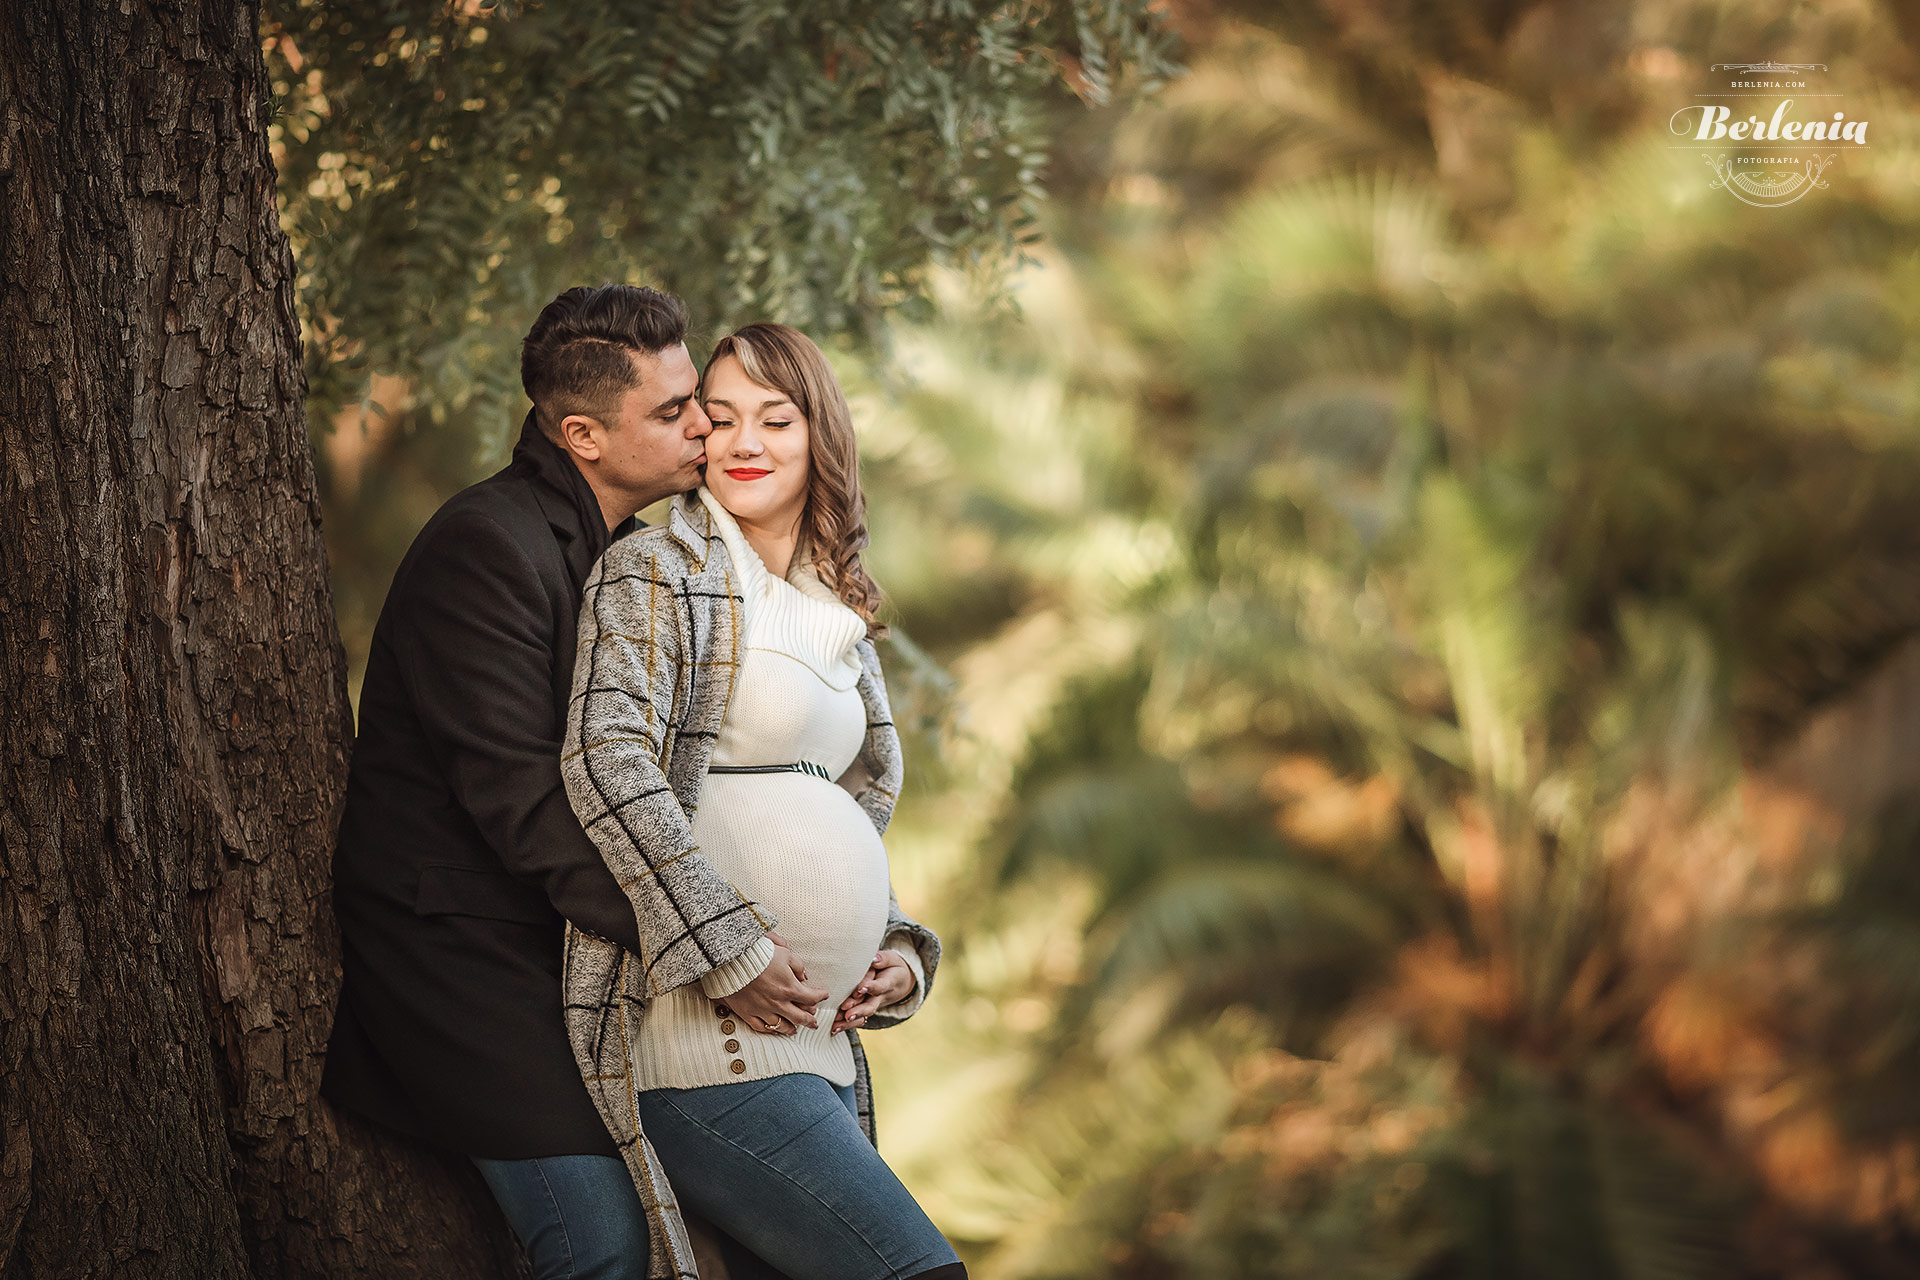 Fotografía de embarazo en invierno con pareja - Sesión de fotos embarazada en exterior - Palermo, CABA, Buenos Aires, Argentina - Berlenia Fotografía - 15